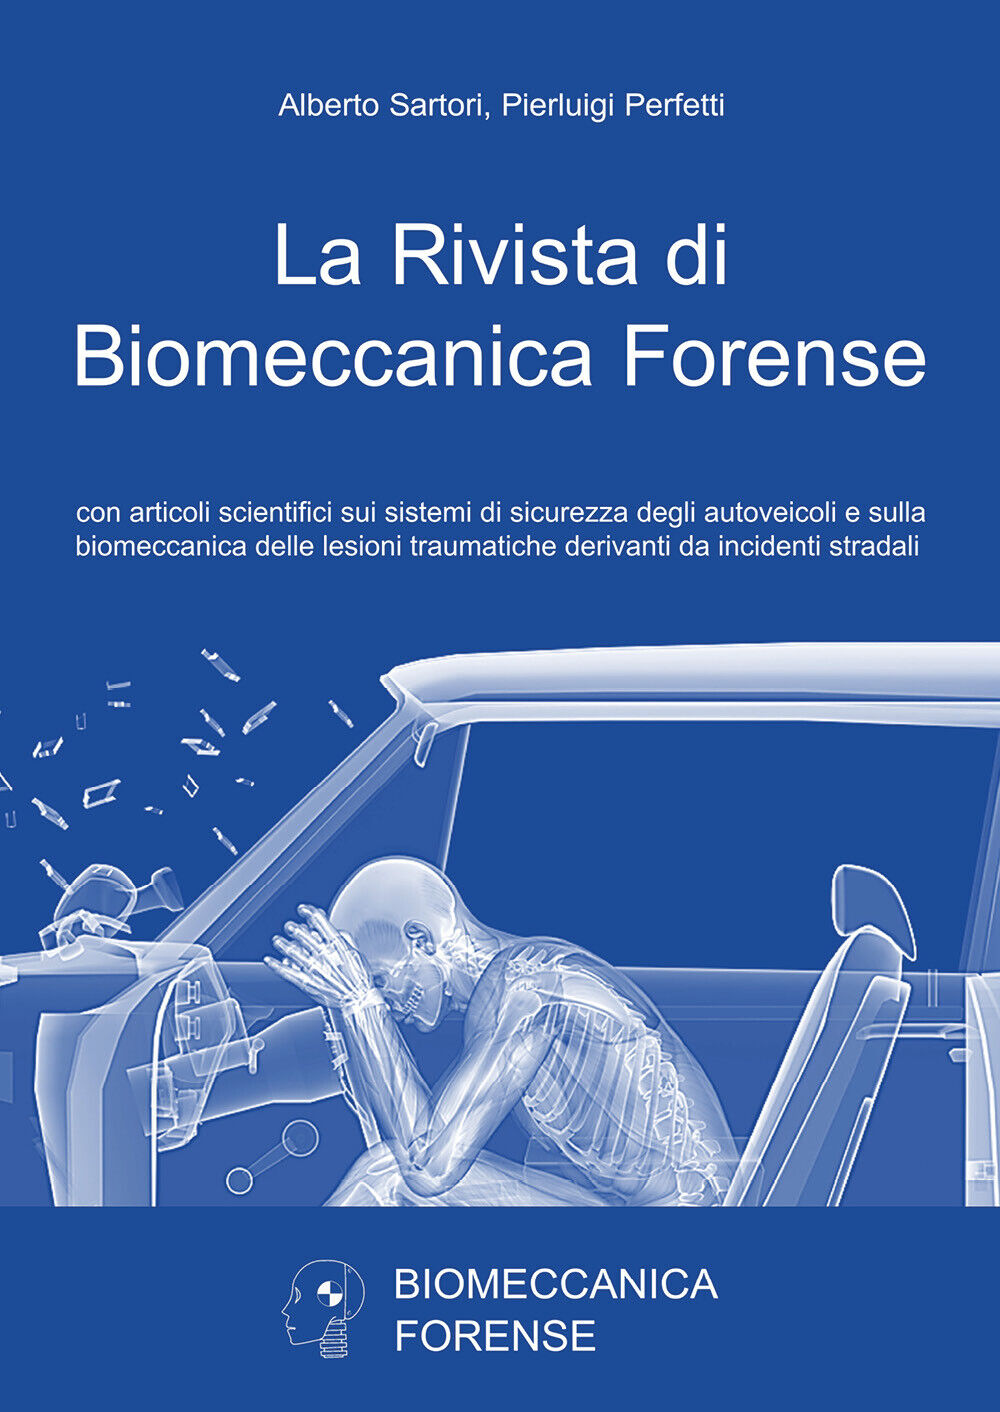 La rivista di biomeccanica forense - Alberto Sartori, Pierluigi Perfetti - P